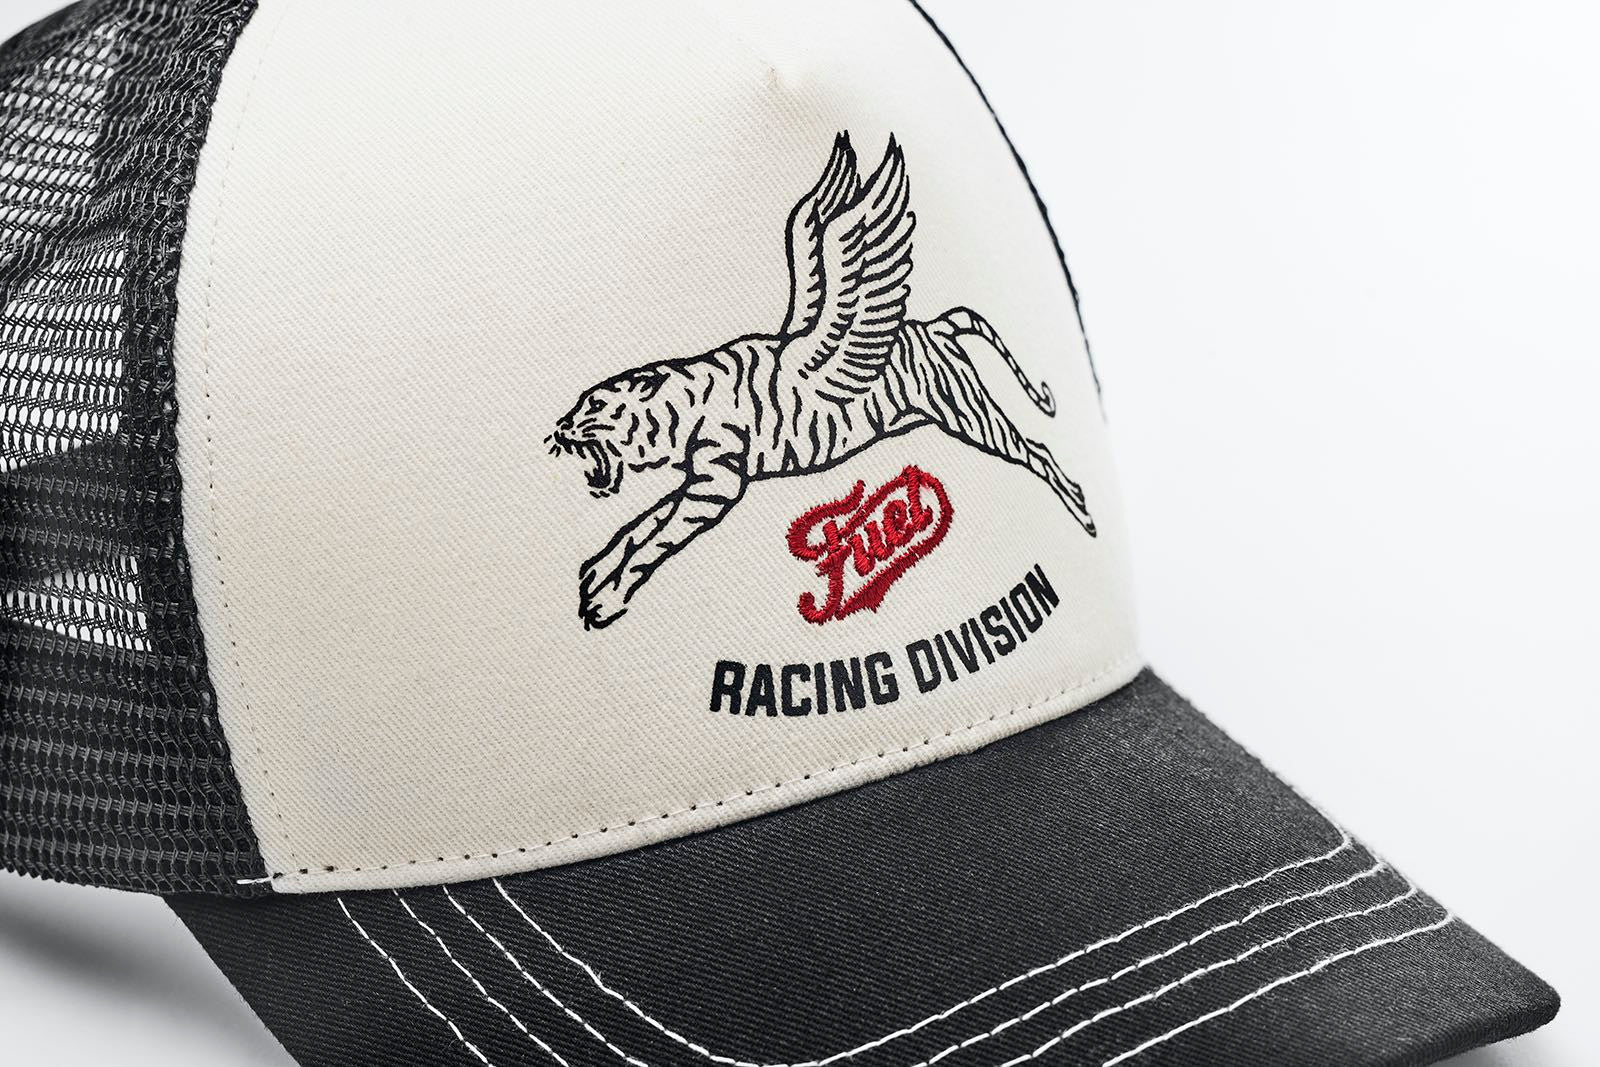 racing-division-cap-logo_1800x1800.jpg